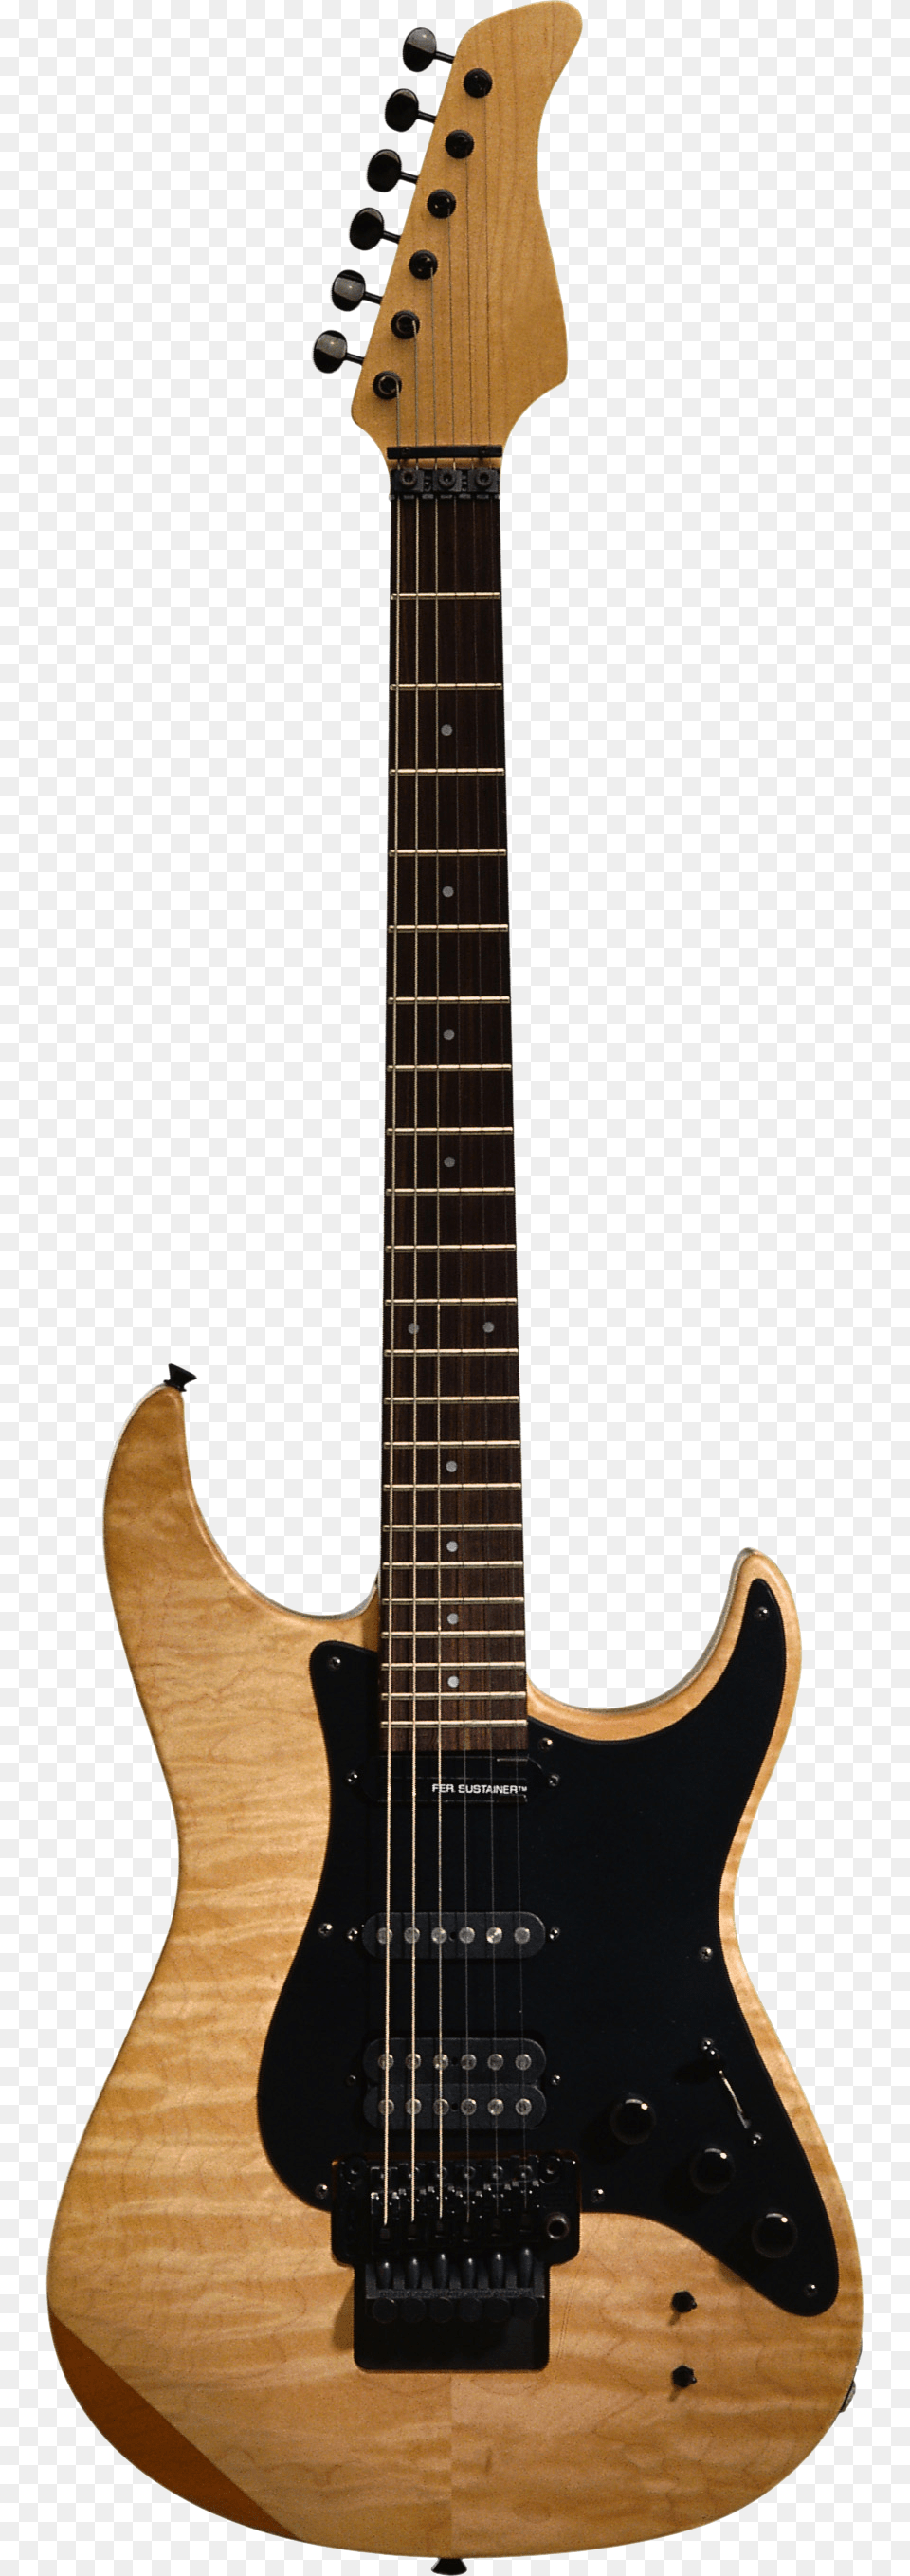 Guitar, Electric Guitar, Musical Instrument, Bass Guitar Png Image